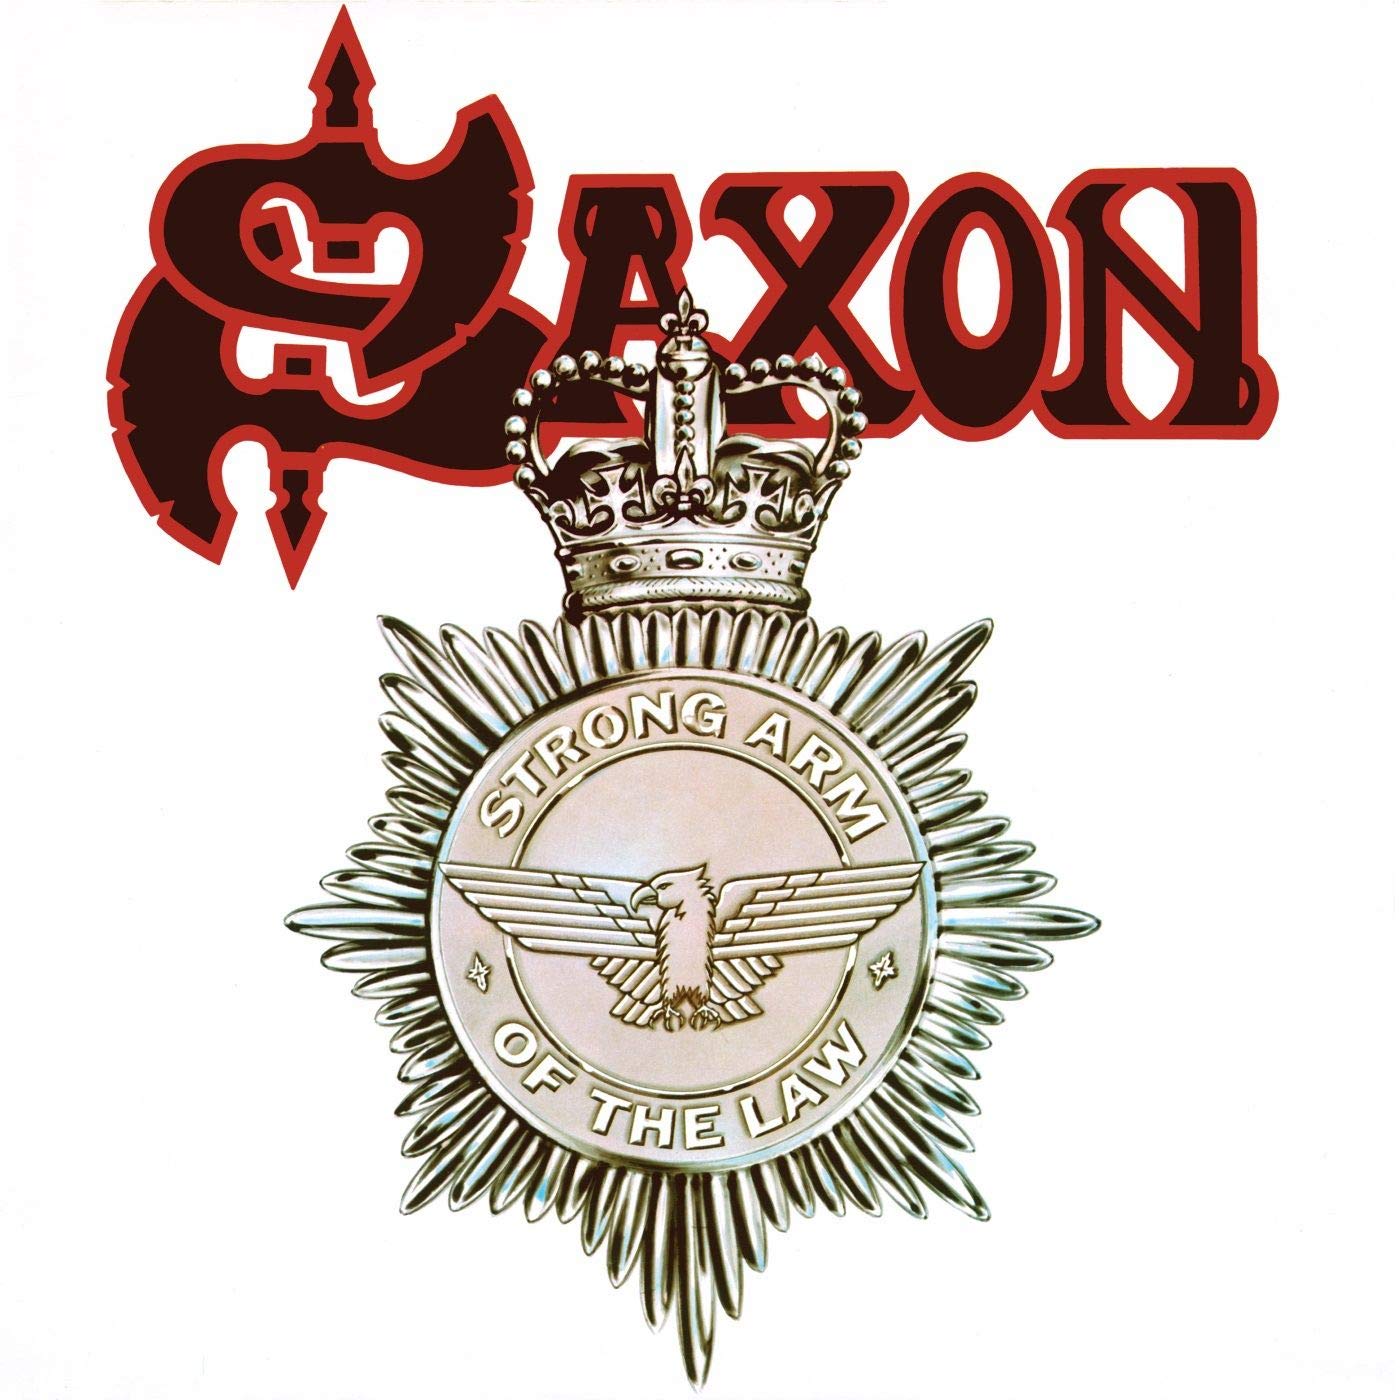 Saxon - Strong Arm Of The Law (Ltd. Ed. 2018 Splatter vinyl gatefold reissue) - Vinyl - New